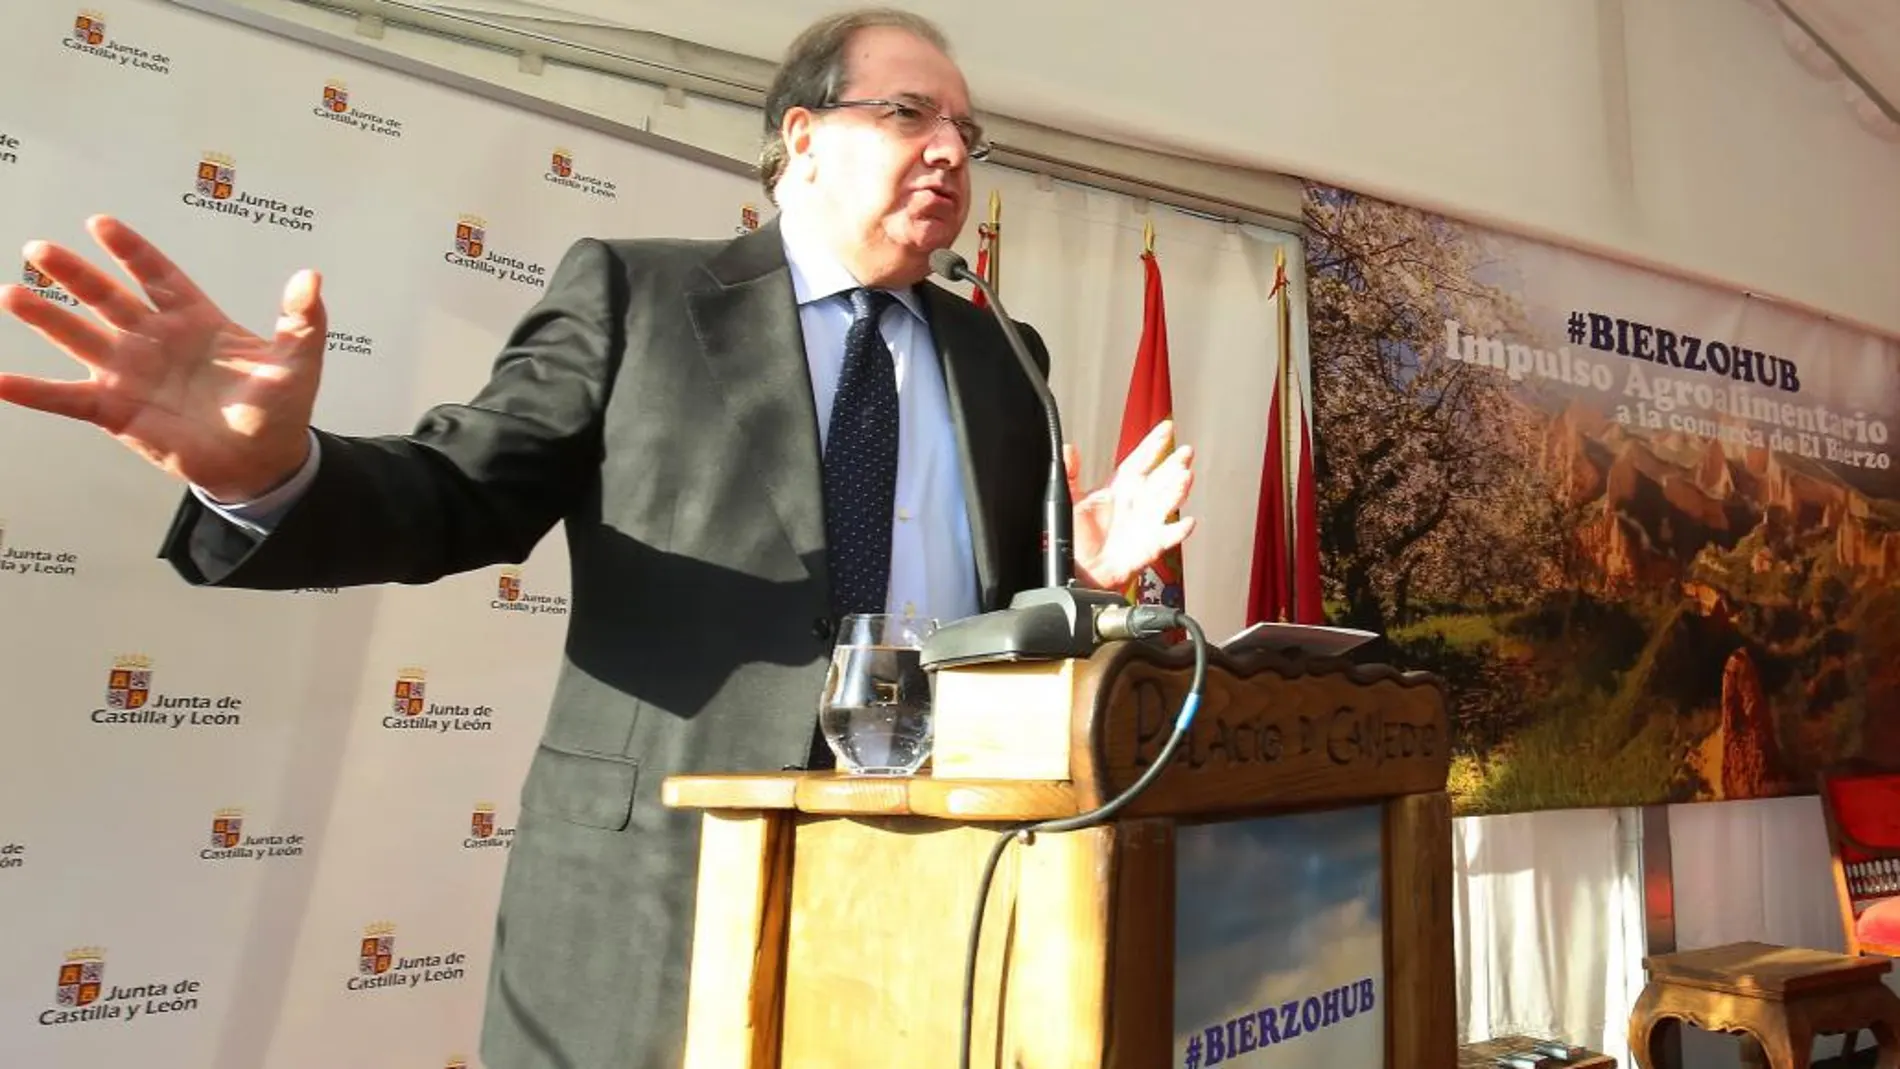 El presidente de Castilla y León, Juan Vicente Herrera, arremete contra Iberdrola en la presentación de «Bierzo Hub»